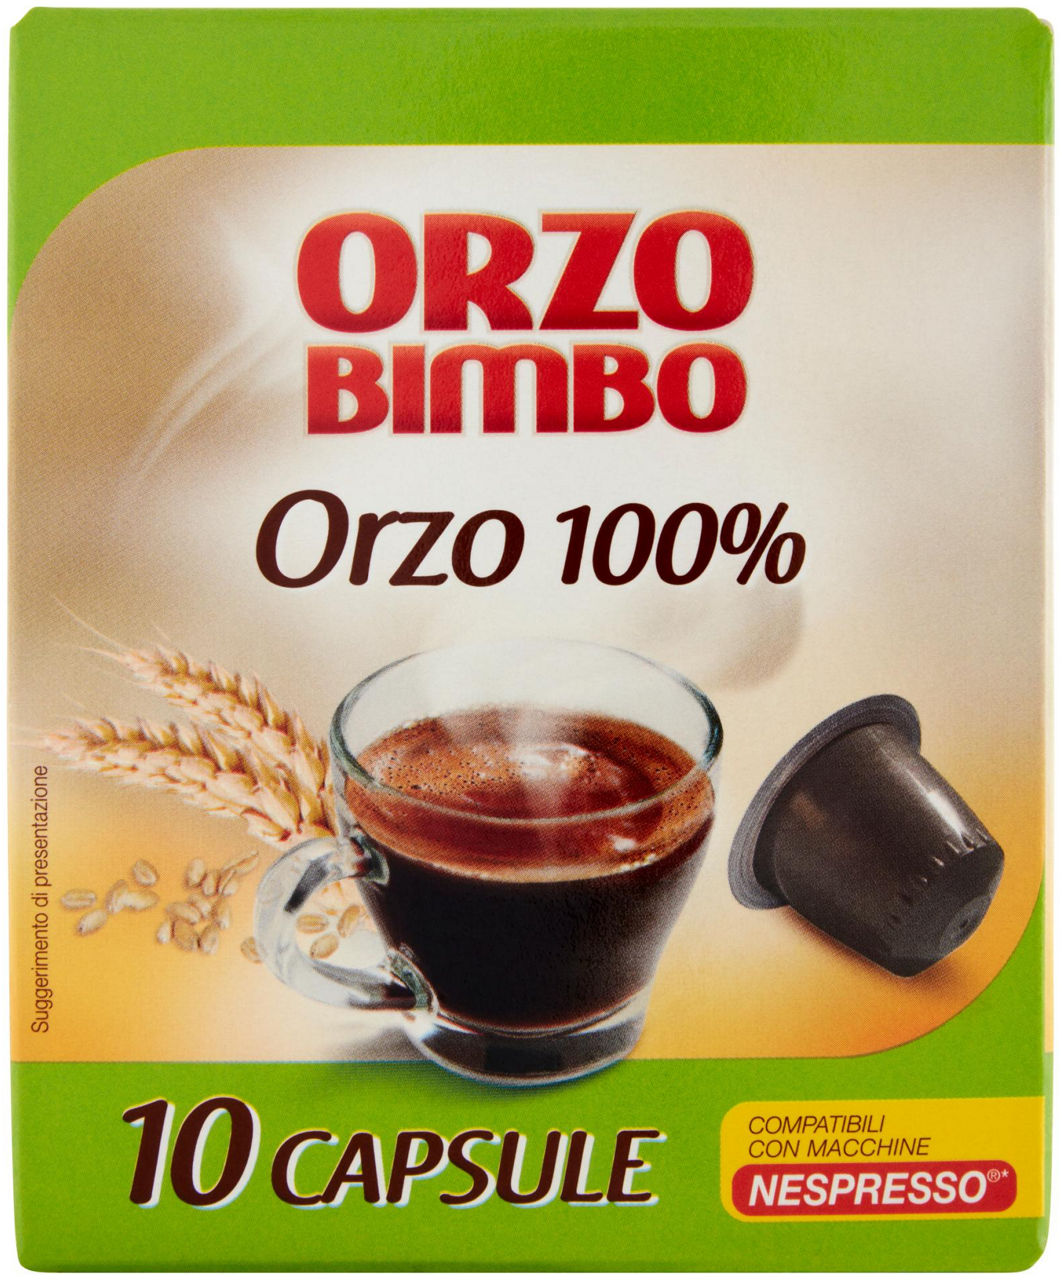 Orzobimbo capsule per macchine nespresso sacchetto pz.10 x gr.2,7